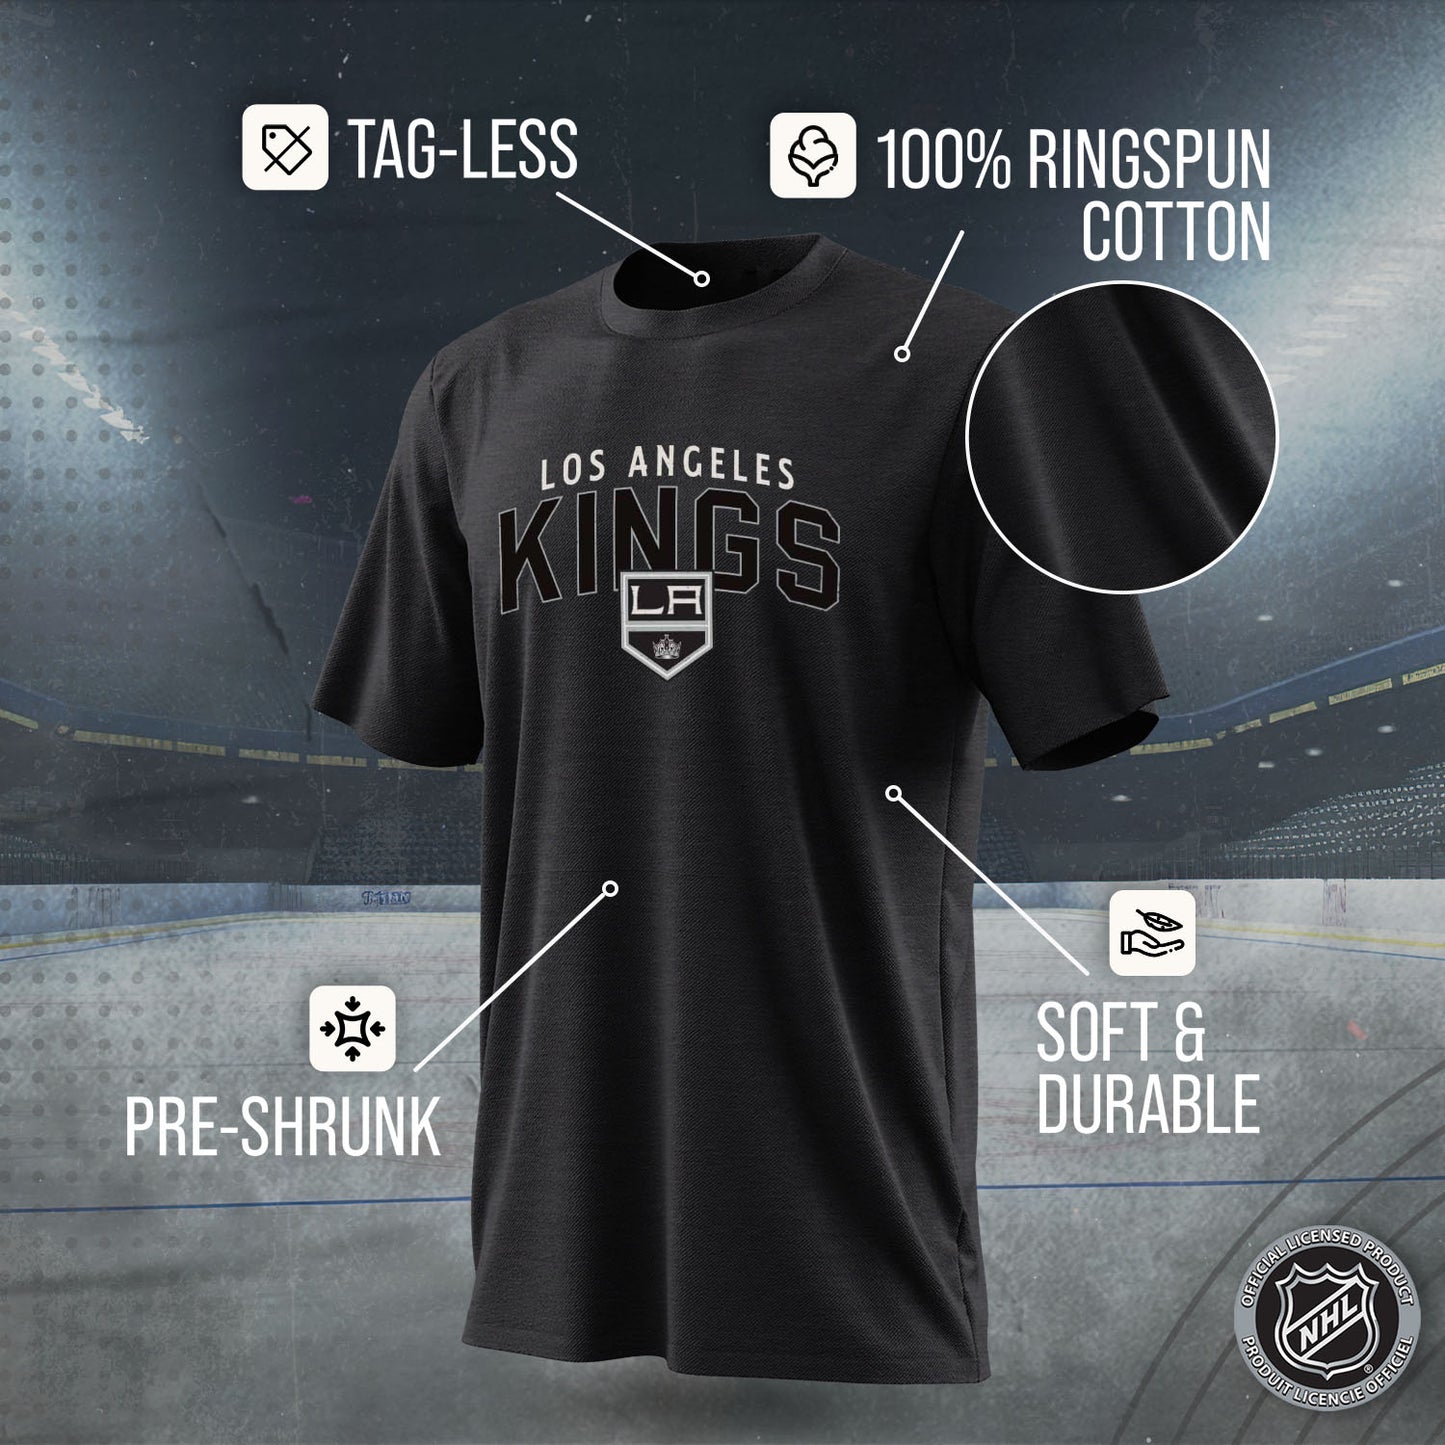 Los Angeles Kings NHL Adult Powerplay Heathered Unisex T-Shirt - Black Heather